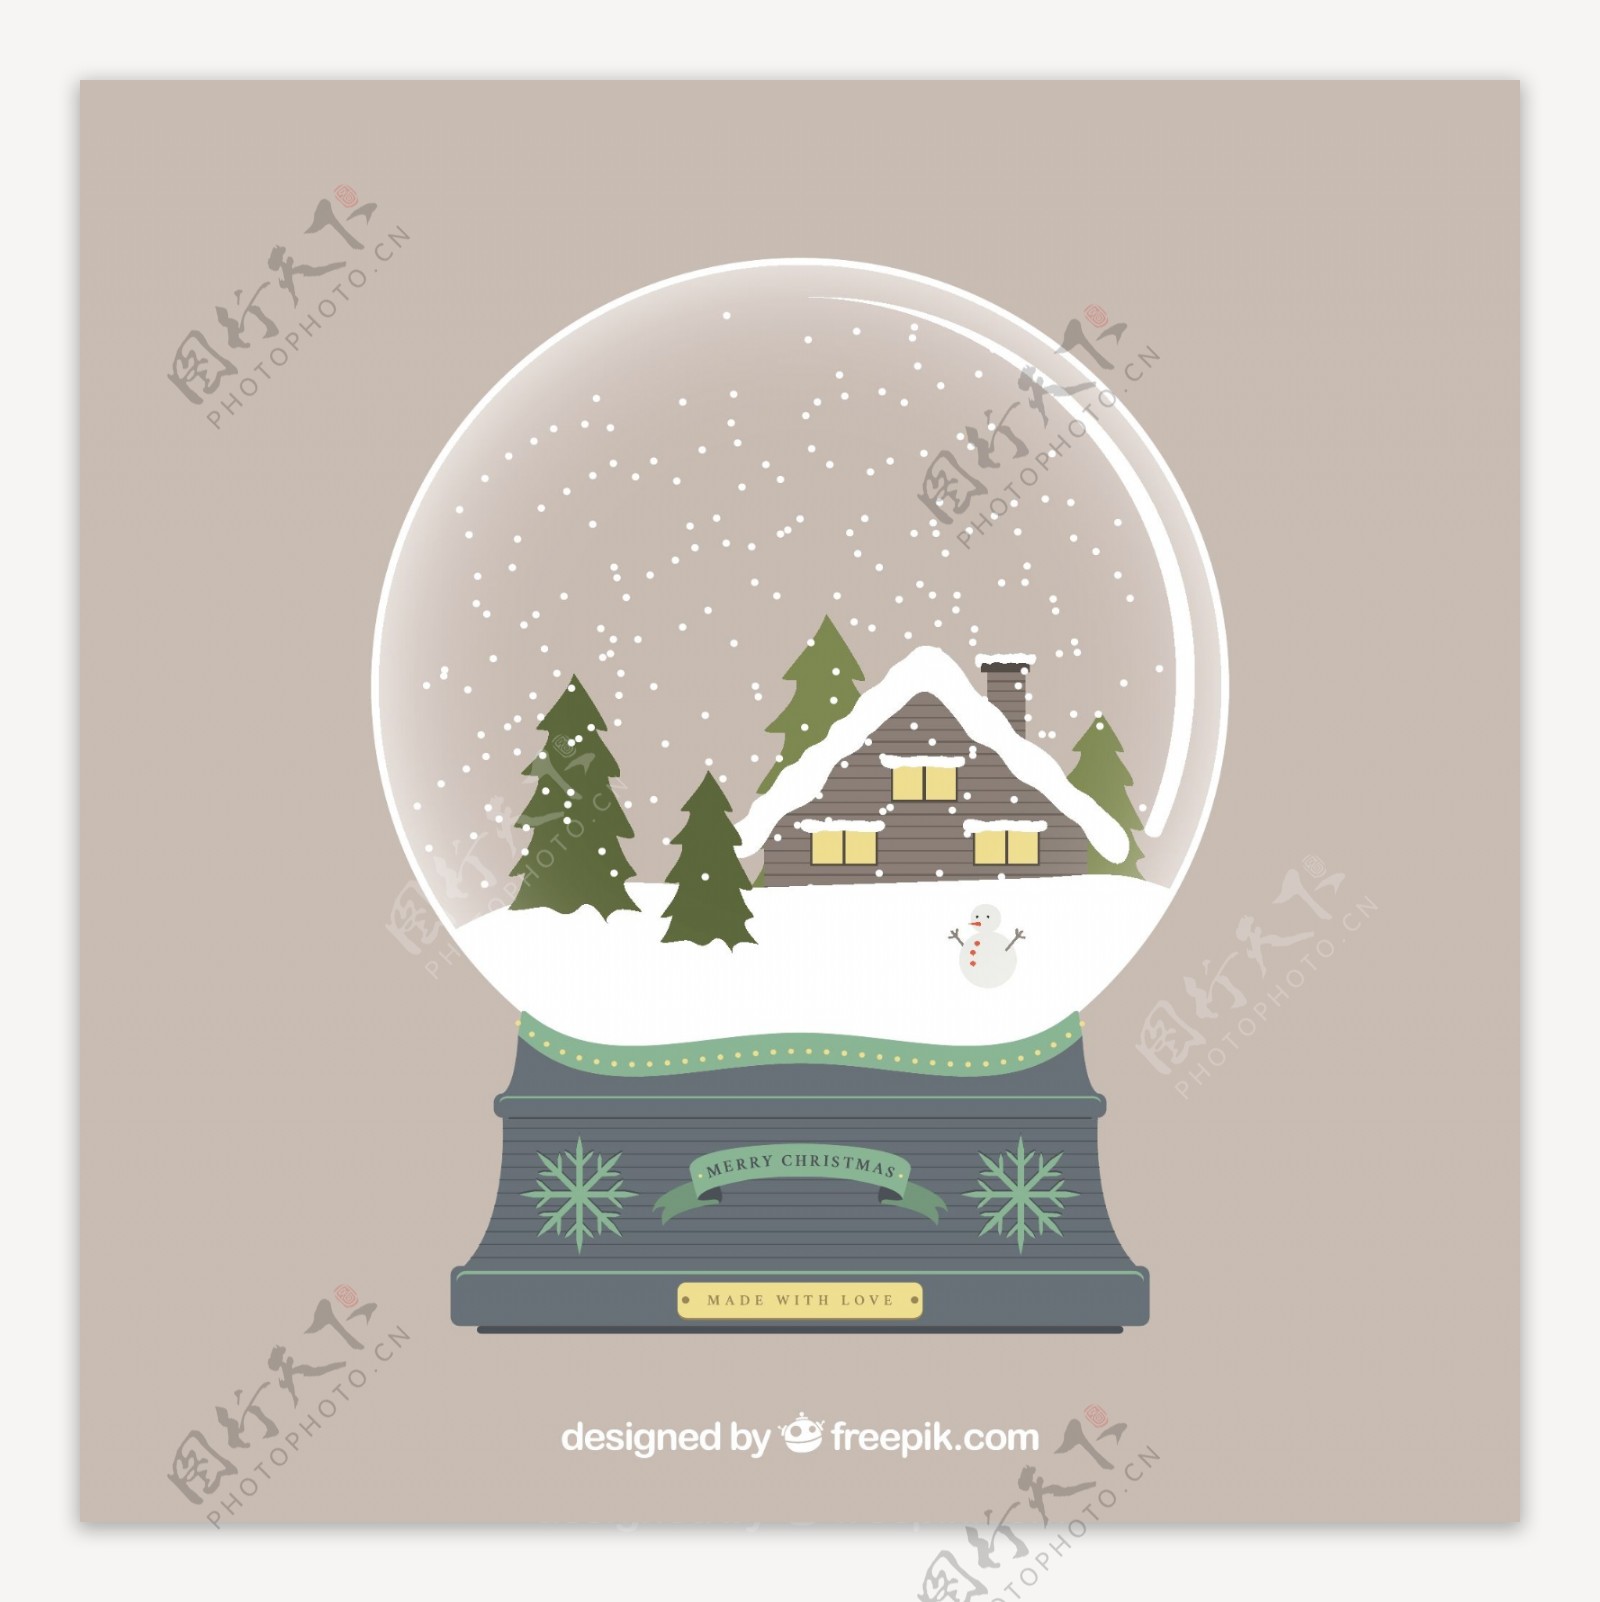 水晶球里的雪房子